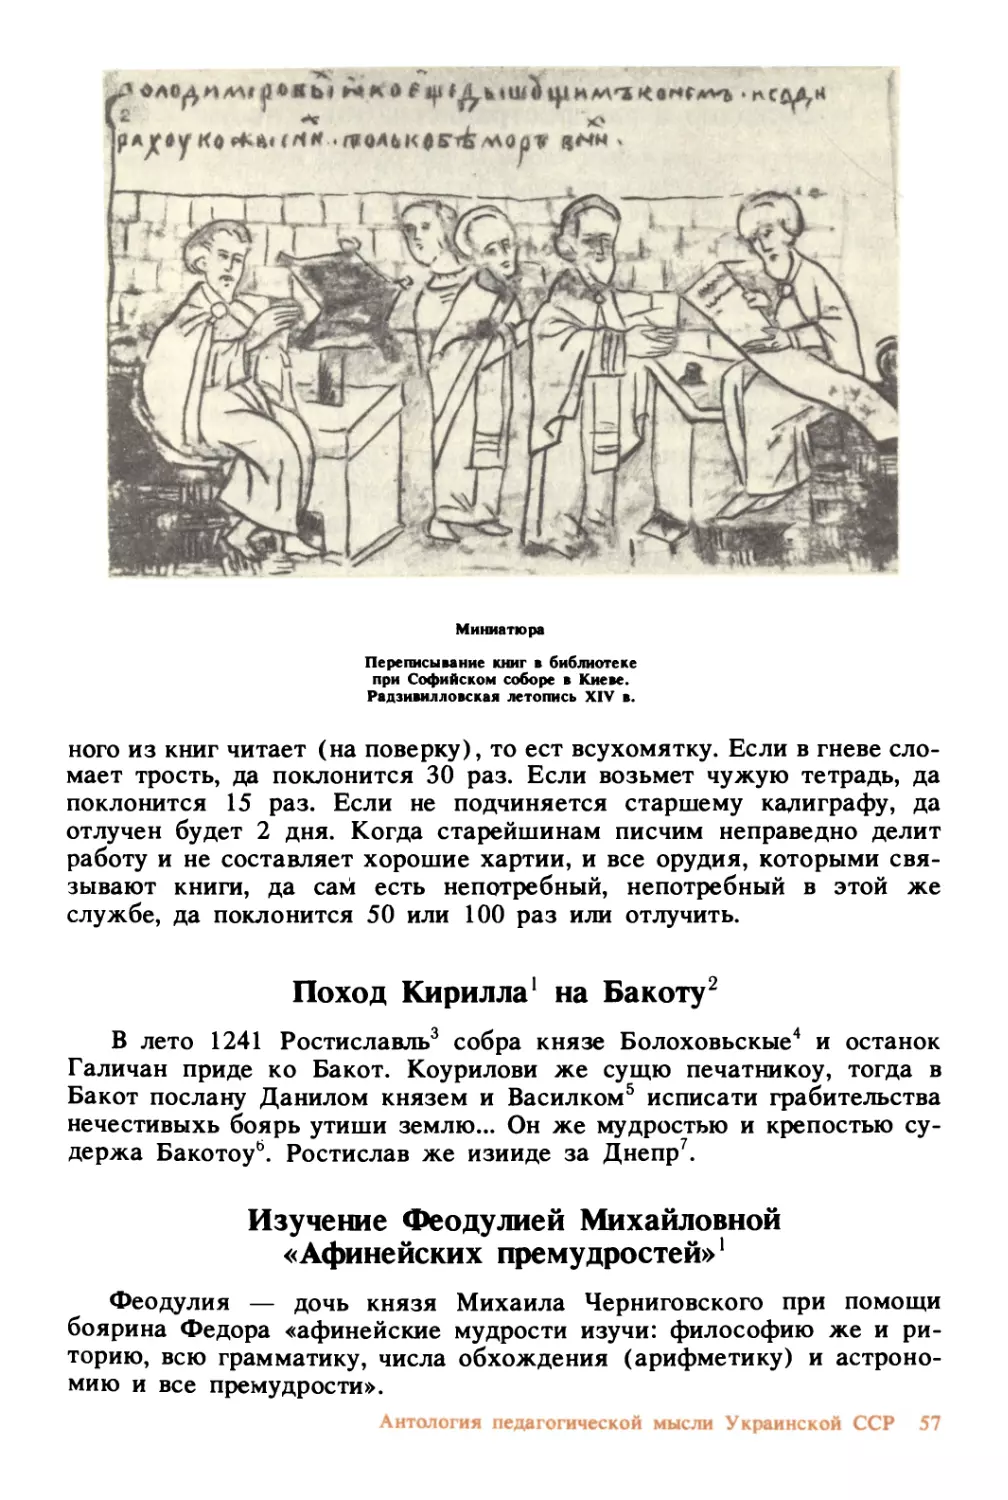 Поход Кирилла на Бакоту
Изучение Феодулией Михайловной «Афинейских премудростей»